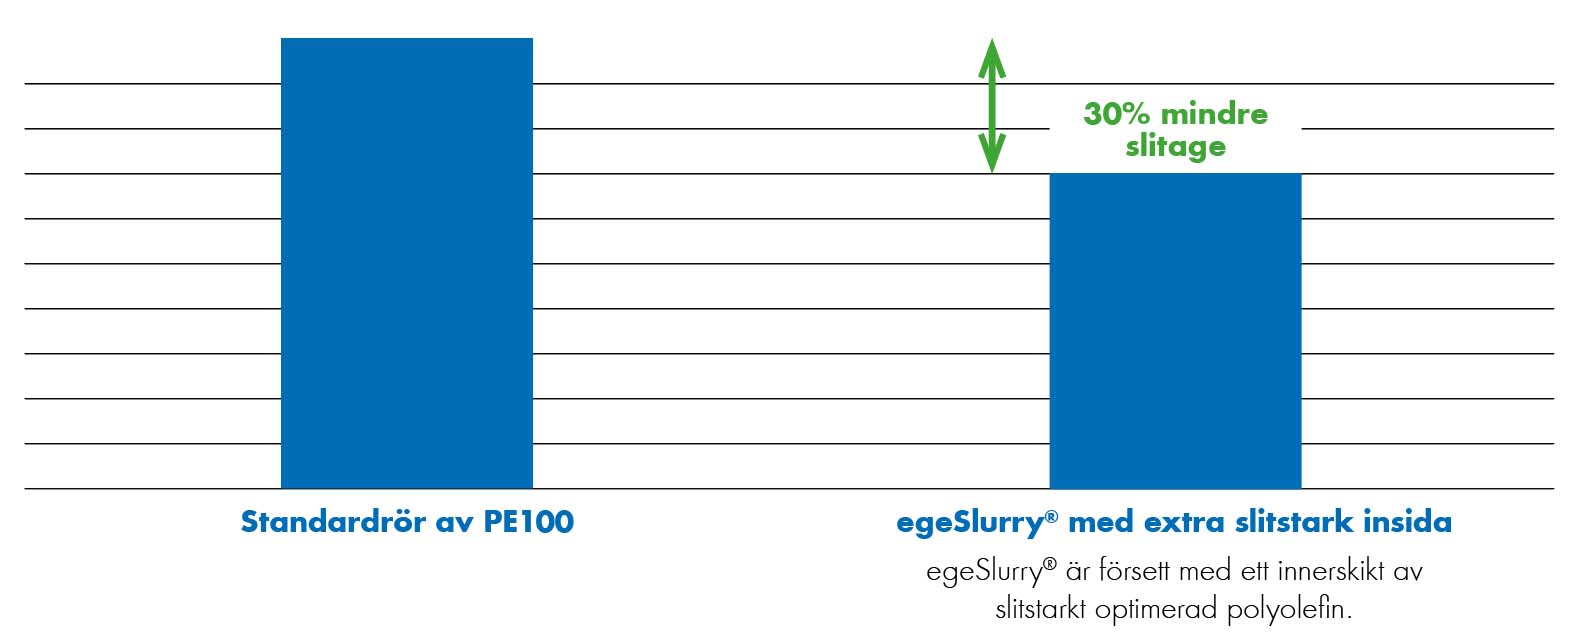 Extena egeSlurry rör i polyeten med skyddande insida ger 30% mindre slitage jämfört med traditionell PE100